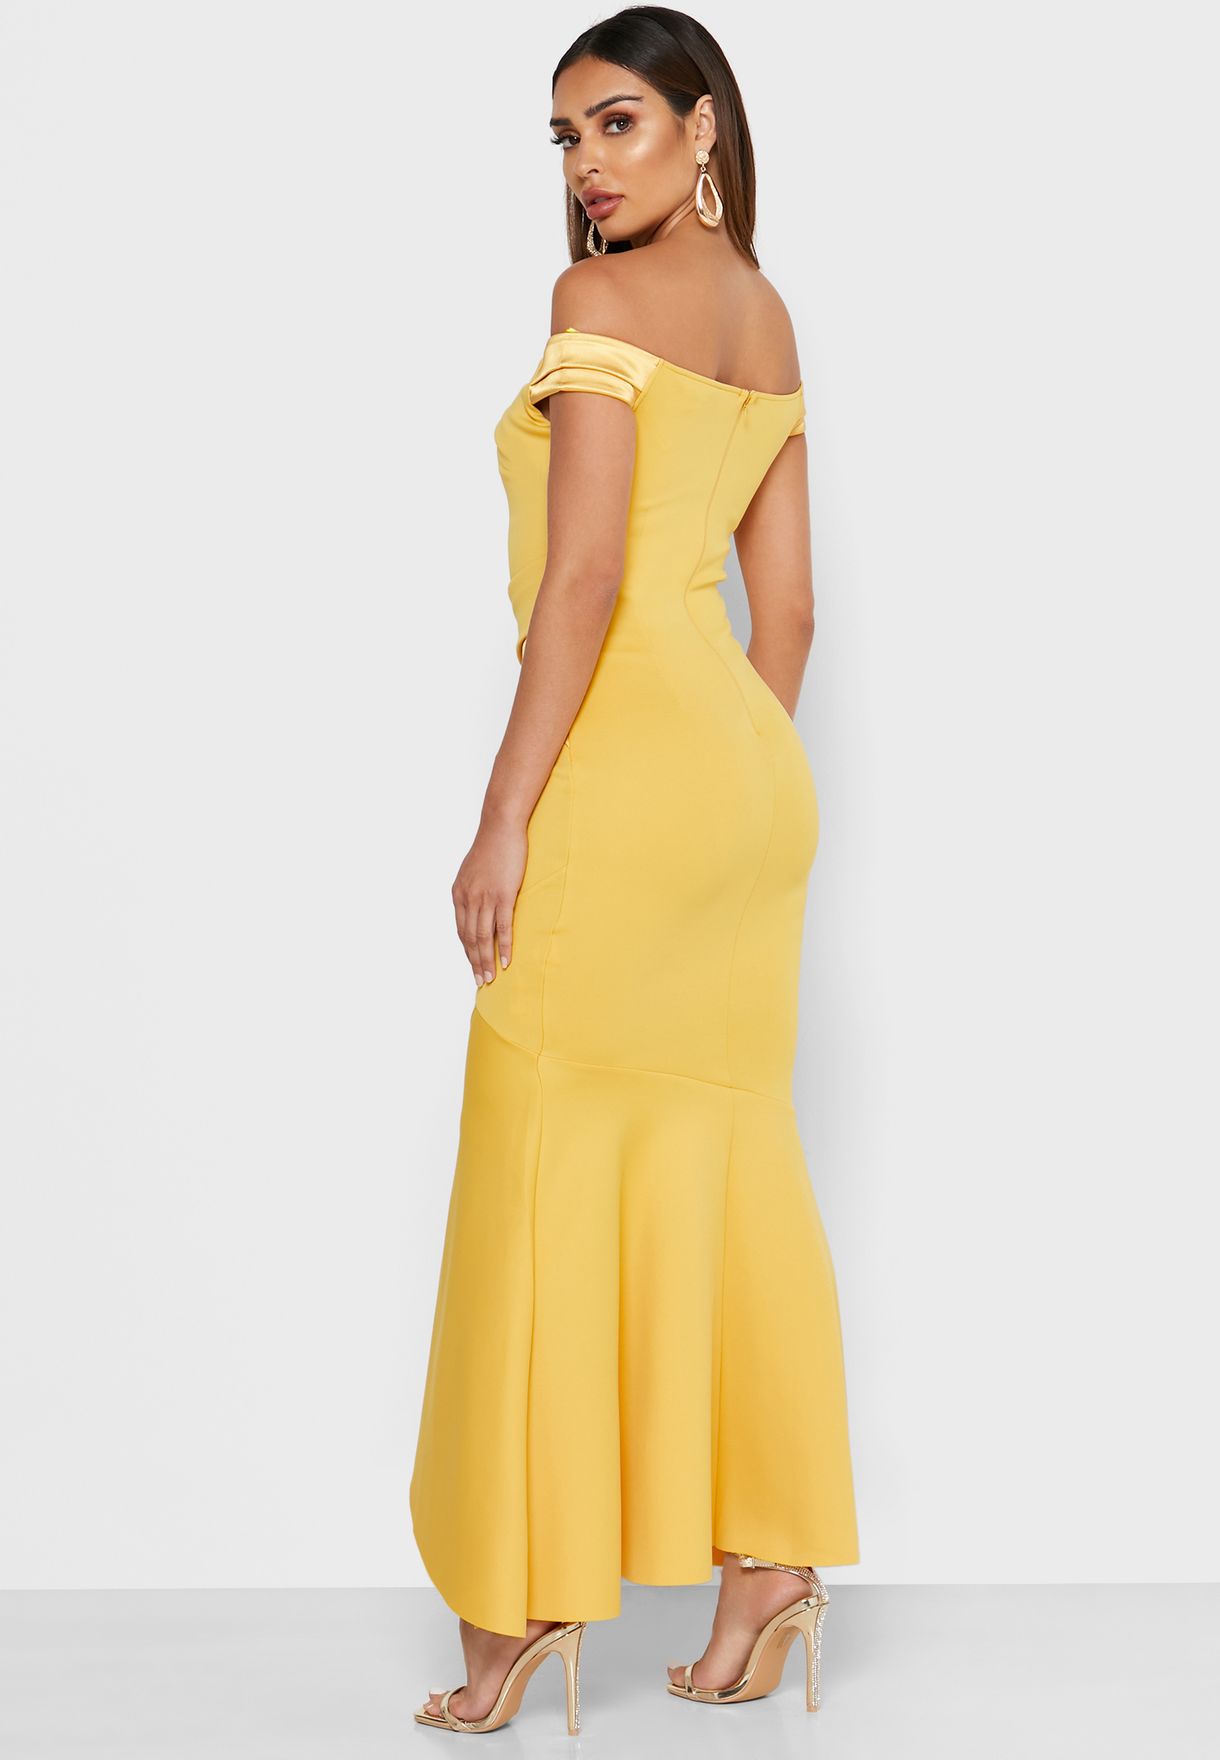 lipsy yellow bardot dress